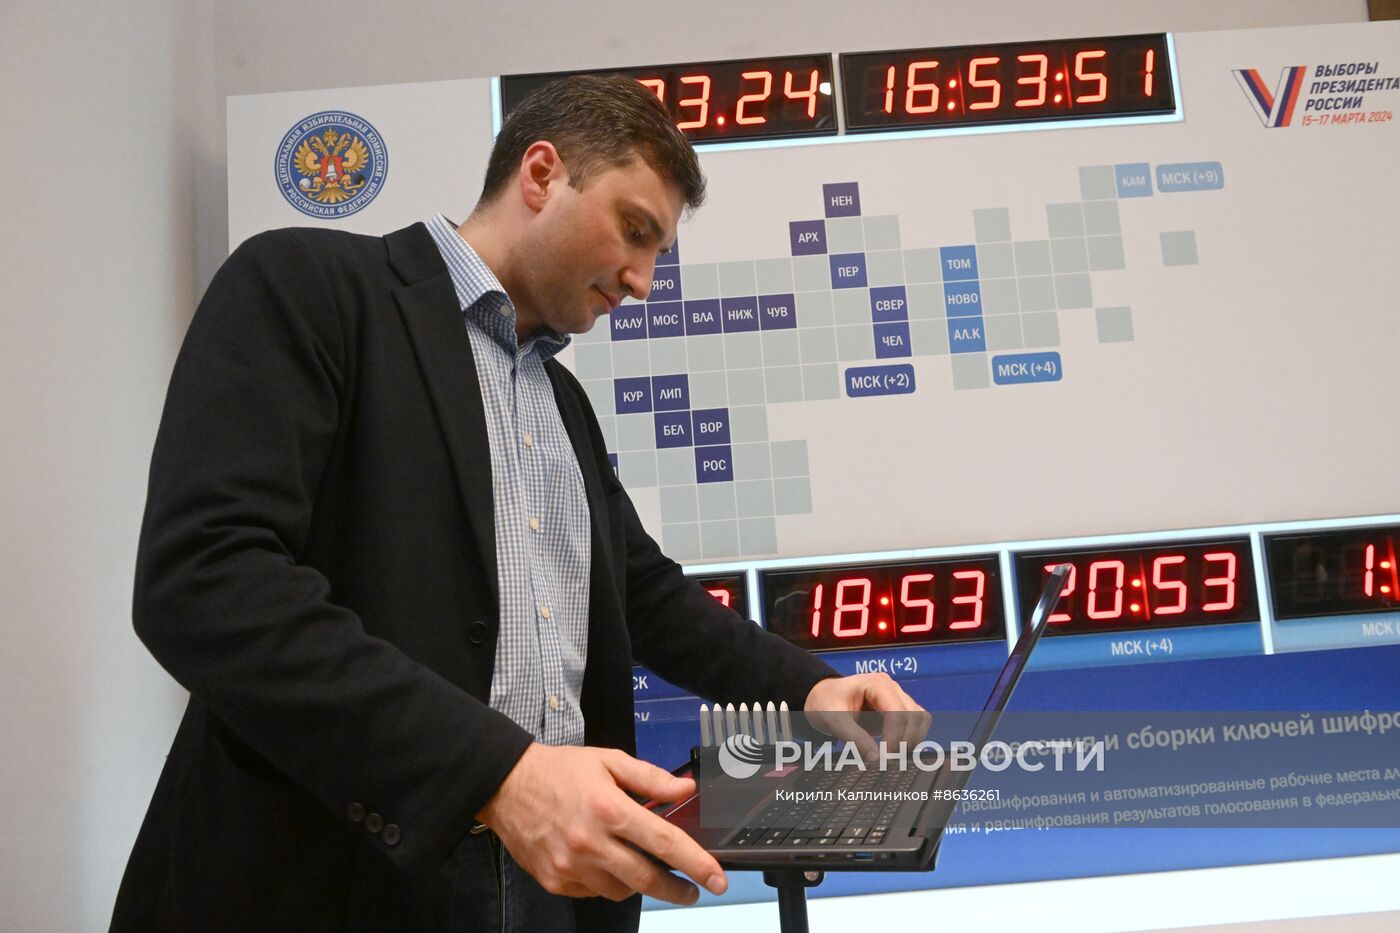 Демонстрация дистанционного электронного голосования на выборах президента РФ